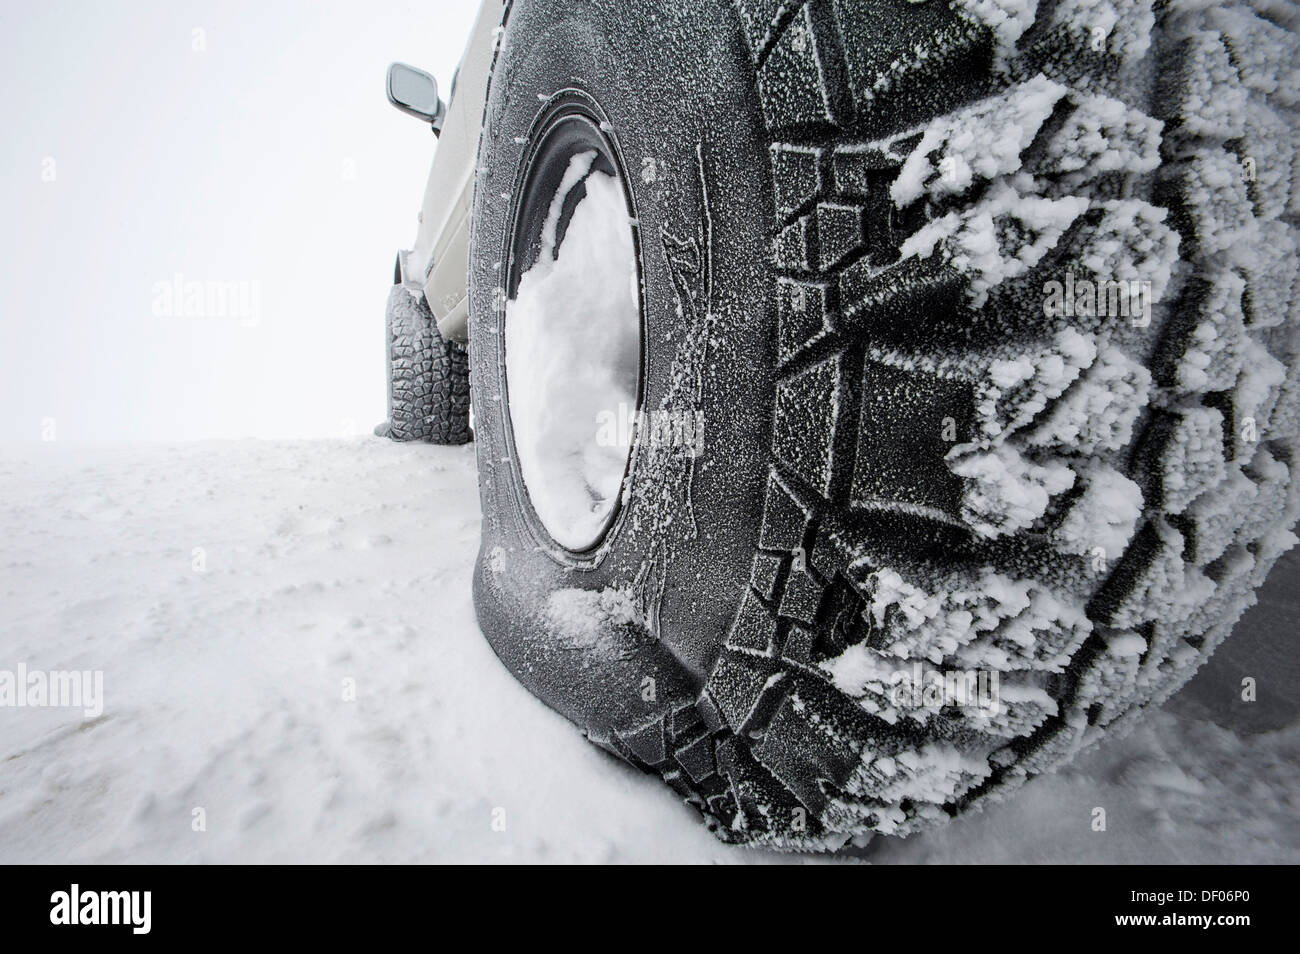 Super Jeep llantas con baja presión de aire para mejor agarre en nieve, Islandia, Europa Foto de stock